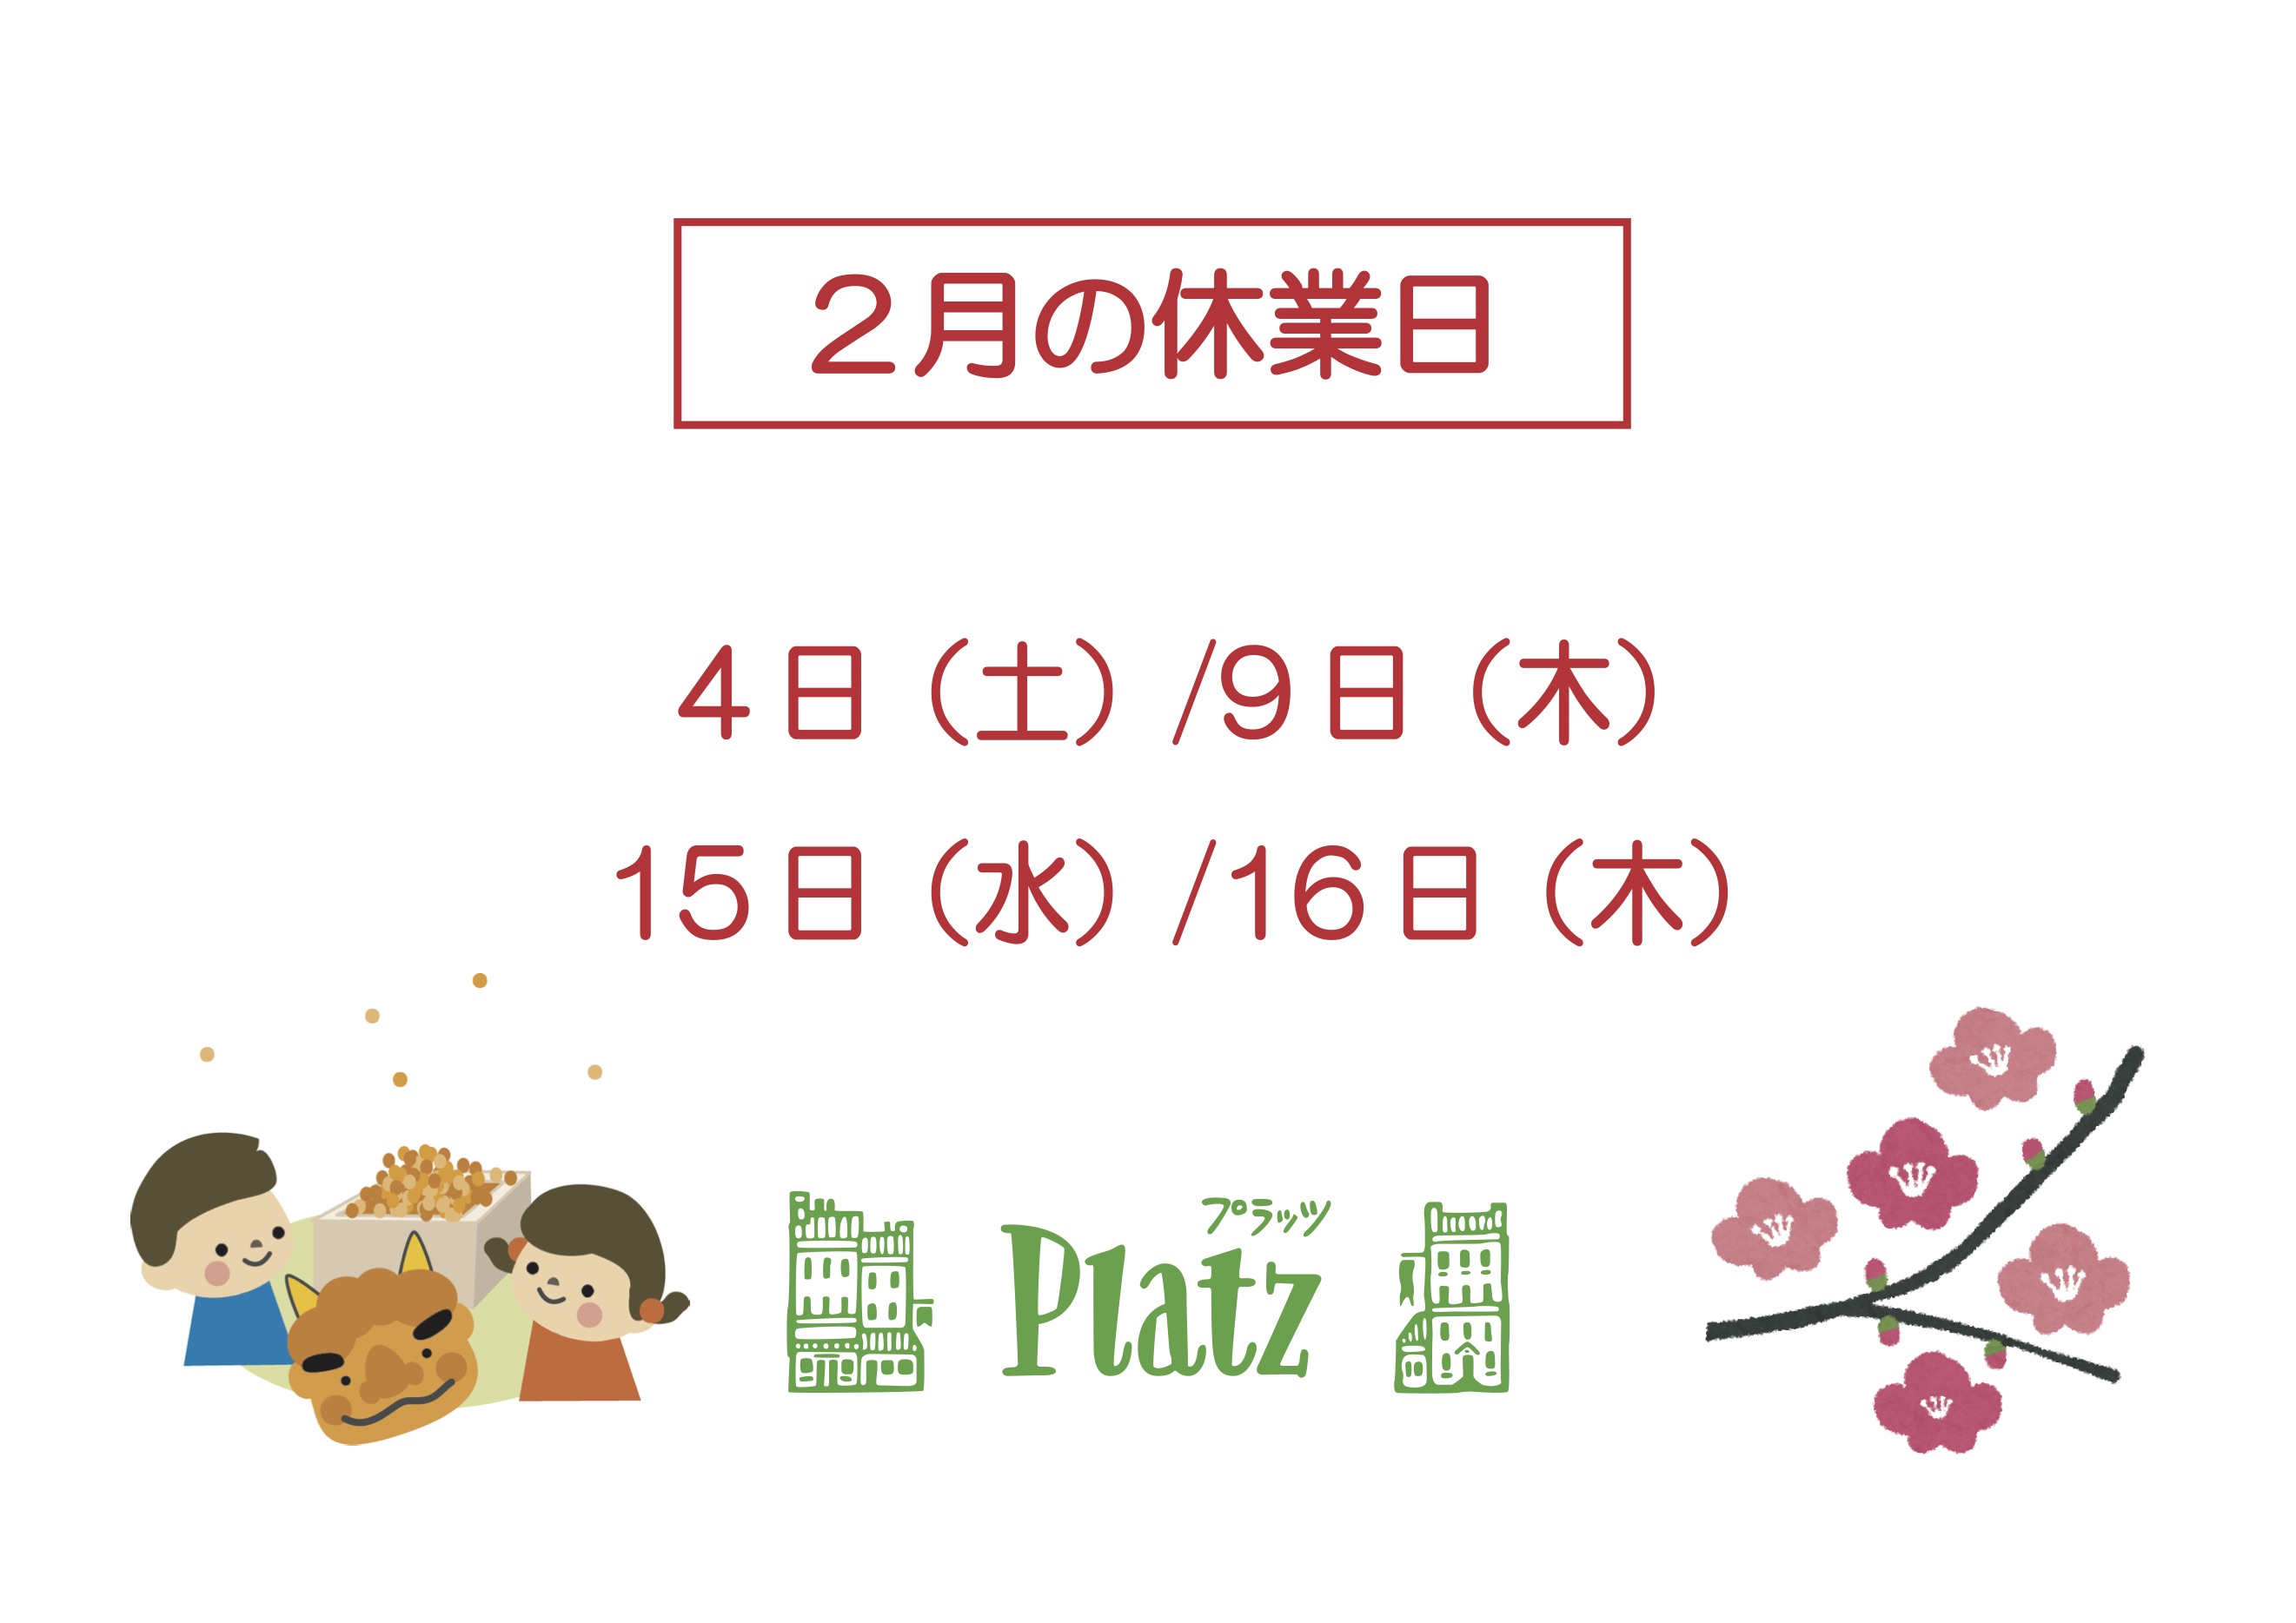 http://www.kyoto-platz.jp/news/images/2023.2%E6%9C%88%E4%BC%91%E6%A5%AD%E6%97%A5.jpg